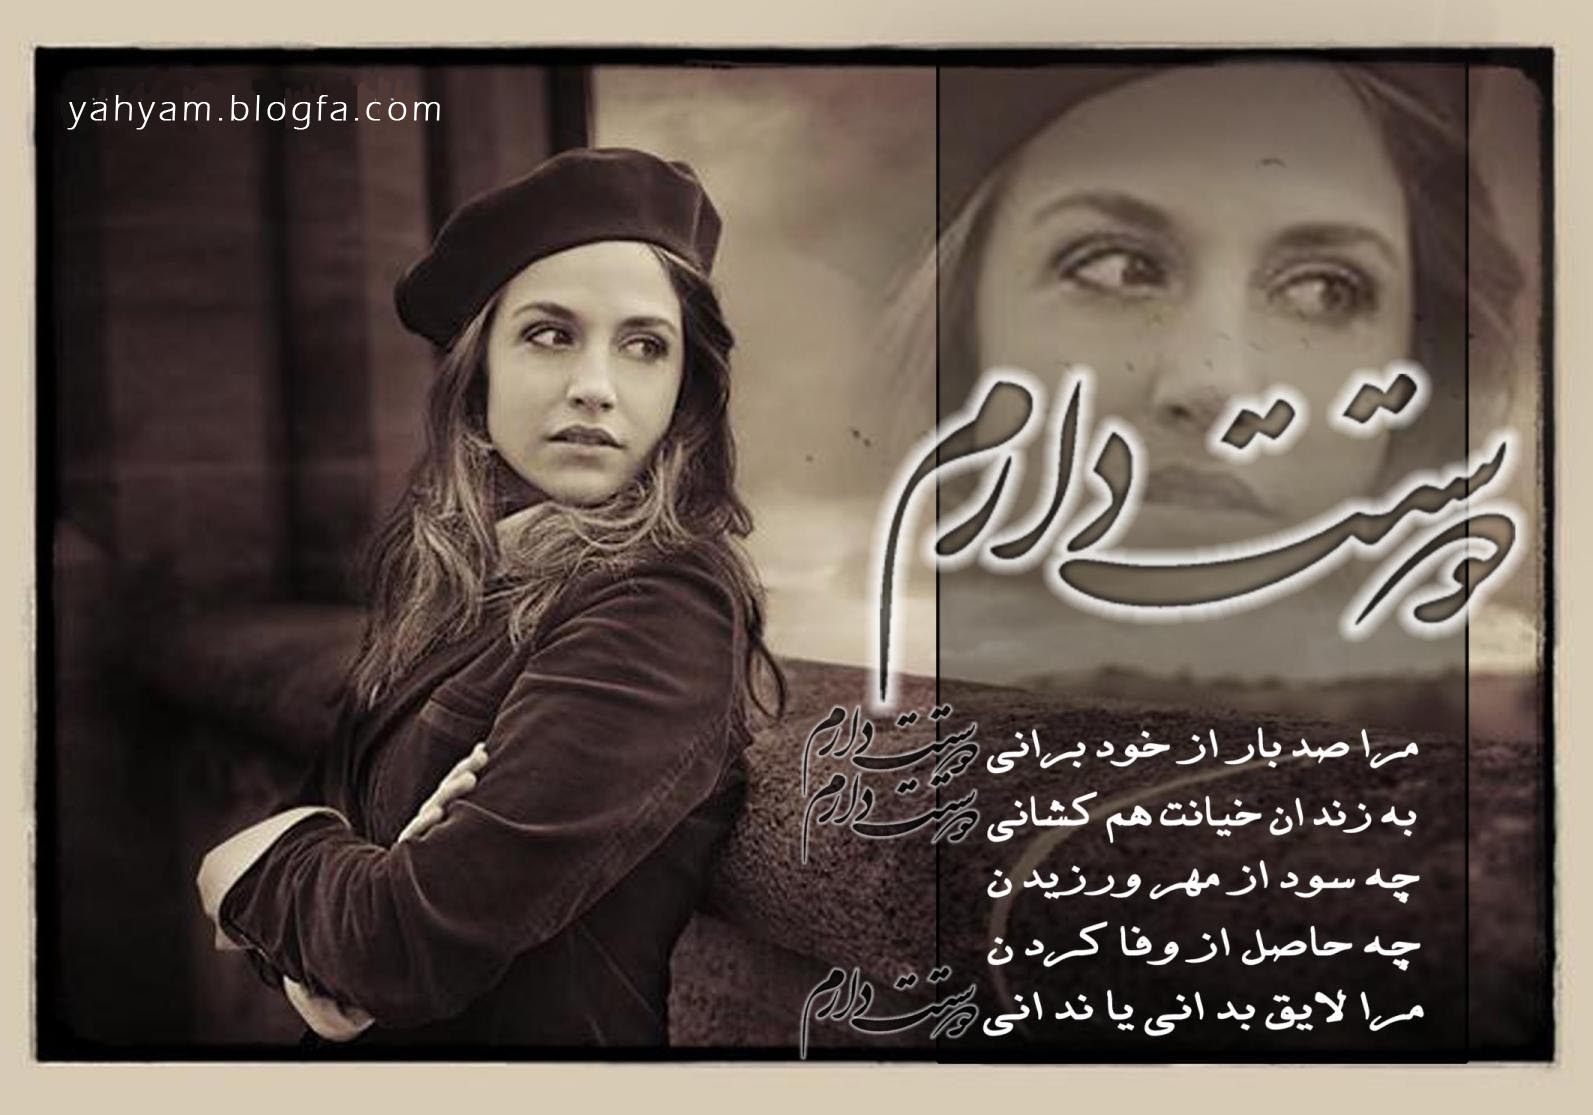 http://joooodi.parsiblog.com/PhotoAlbum/eshghoasheghi/love-yahyam_blogfa_com(3).jpg